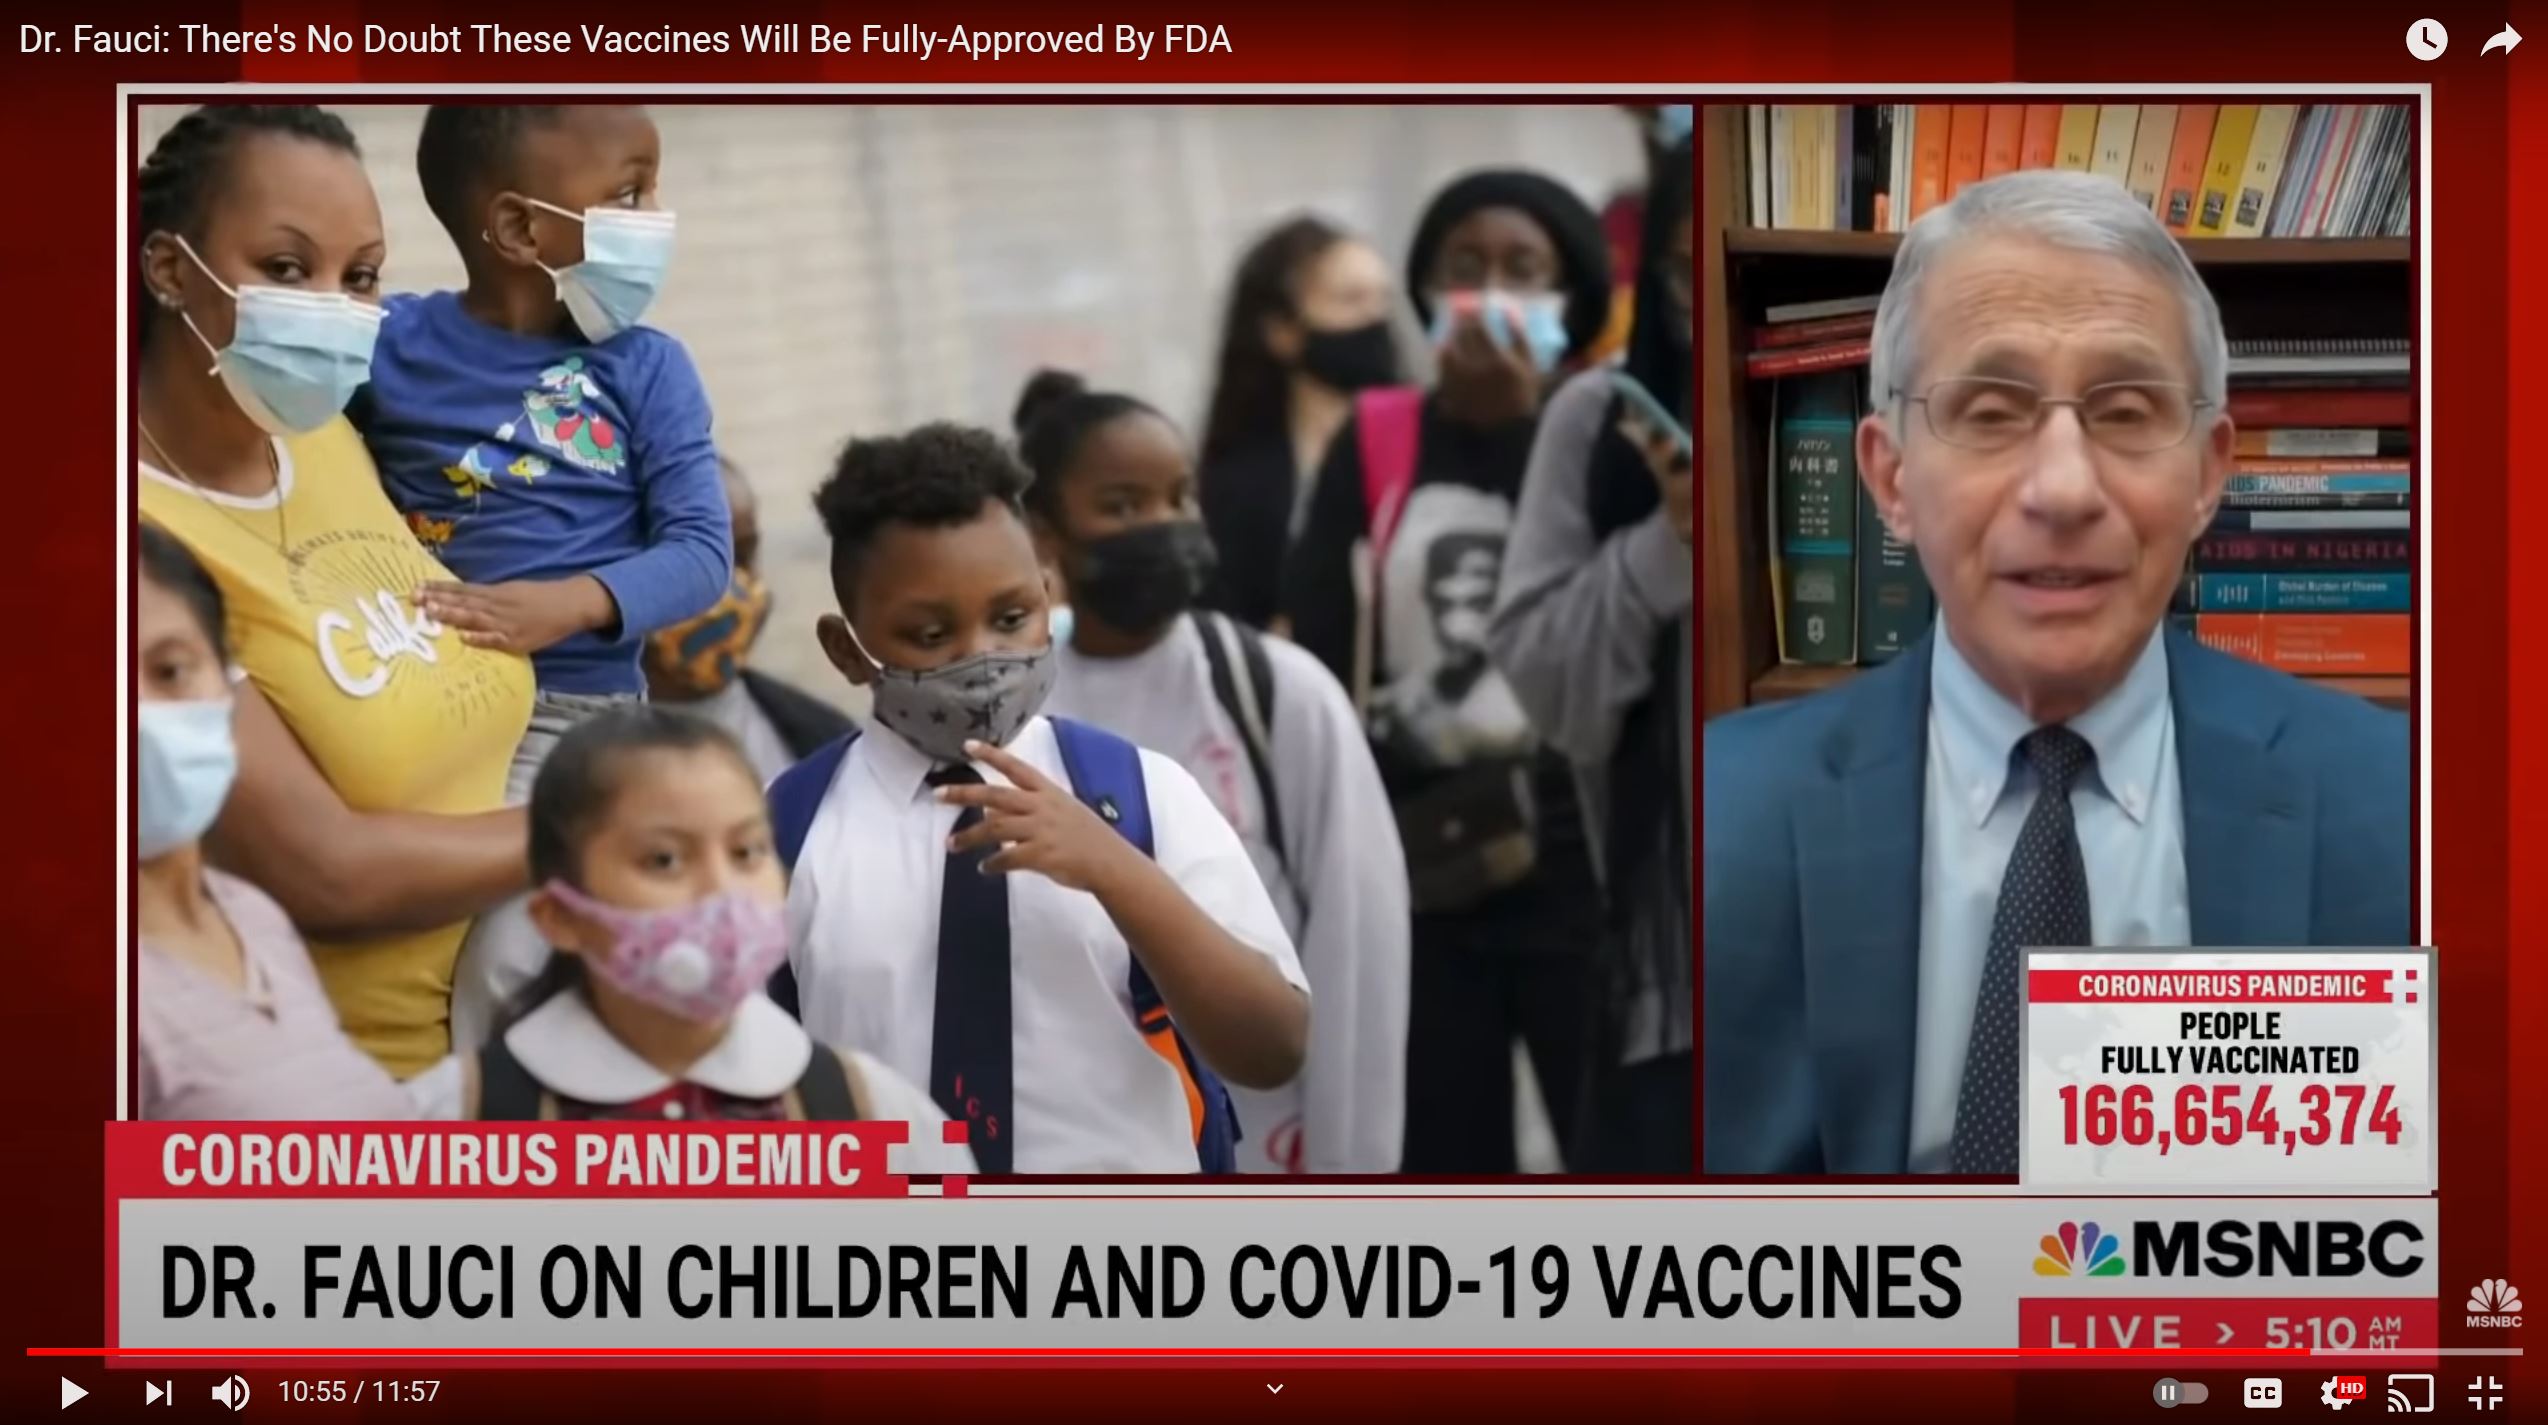 le-dr-anthony-fauci-veut-entourer-les-enfants-de-gens-vaccines.JPG